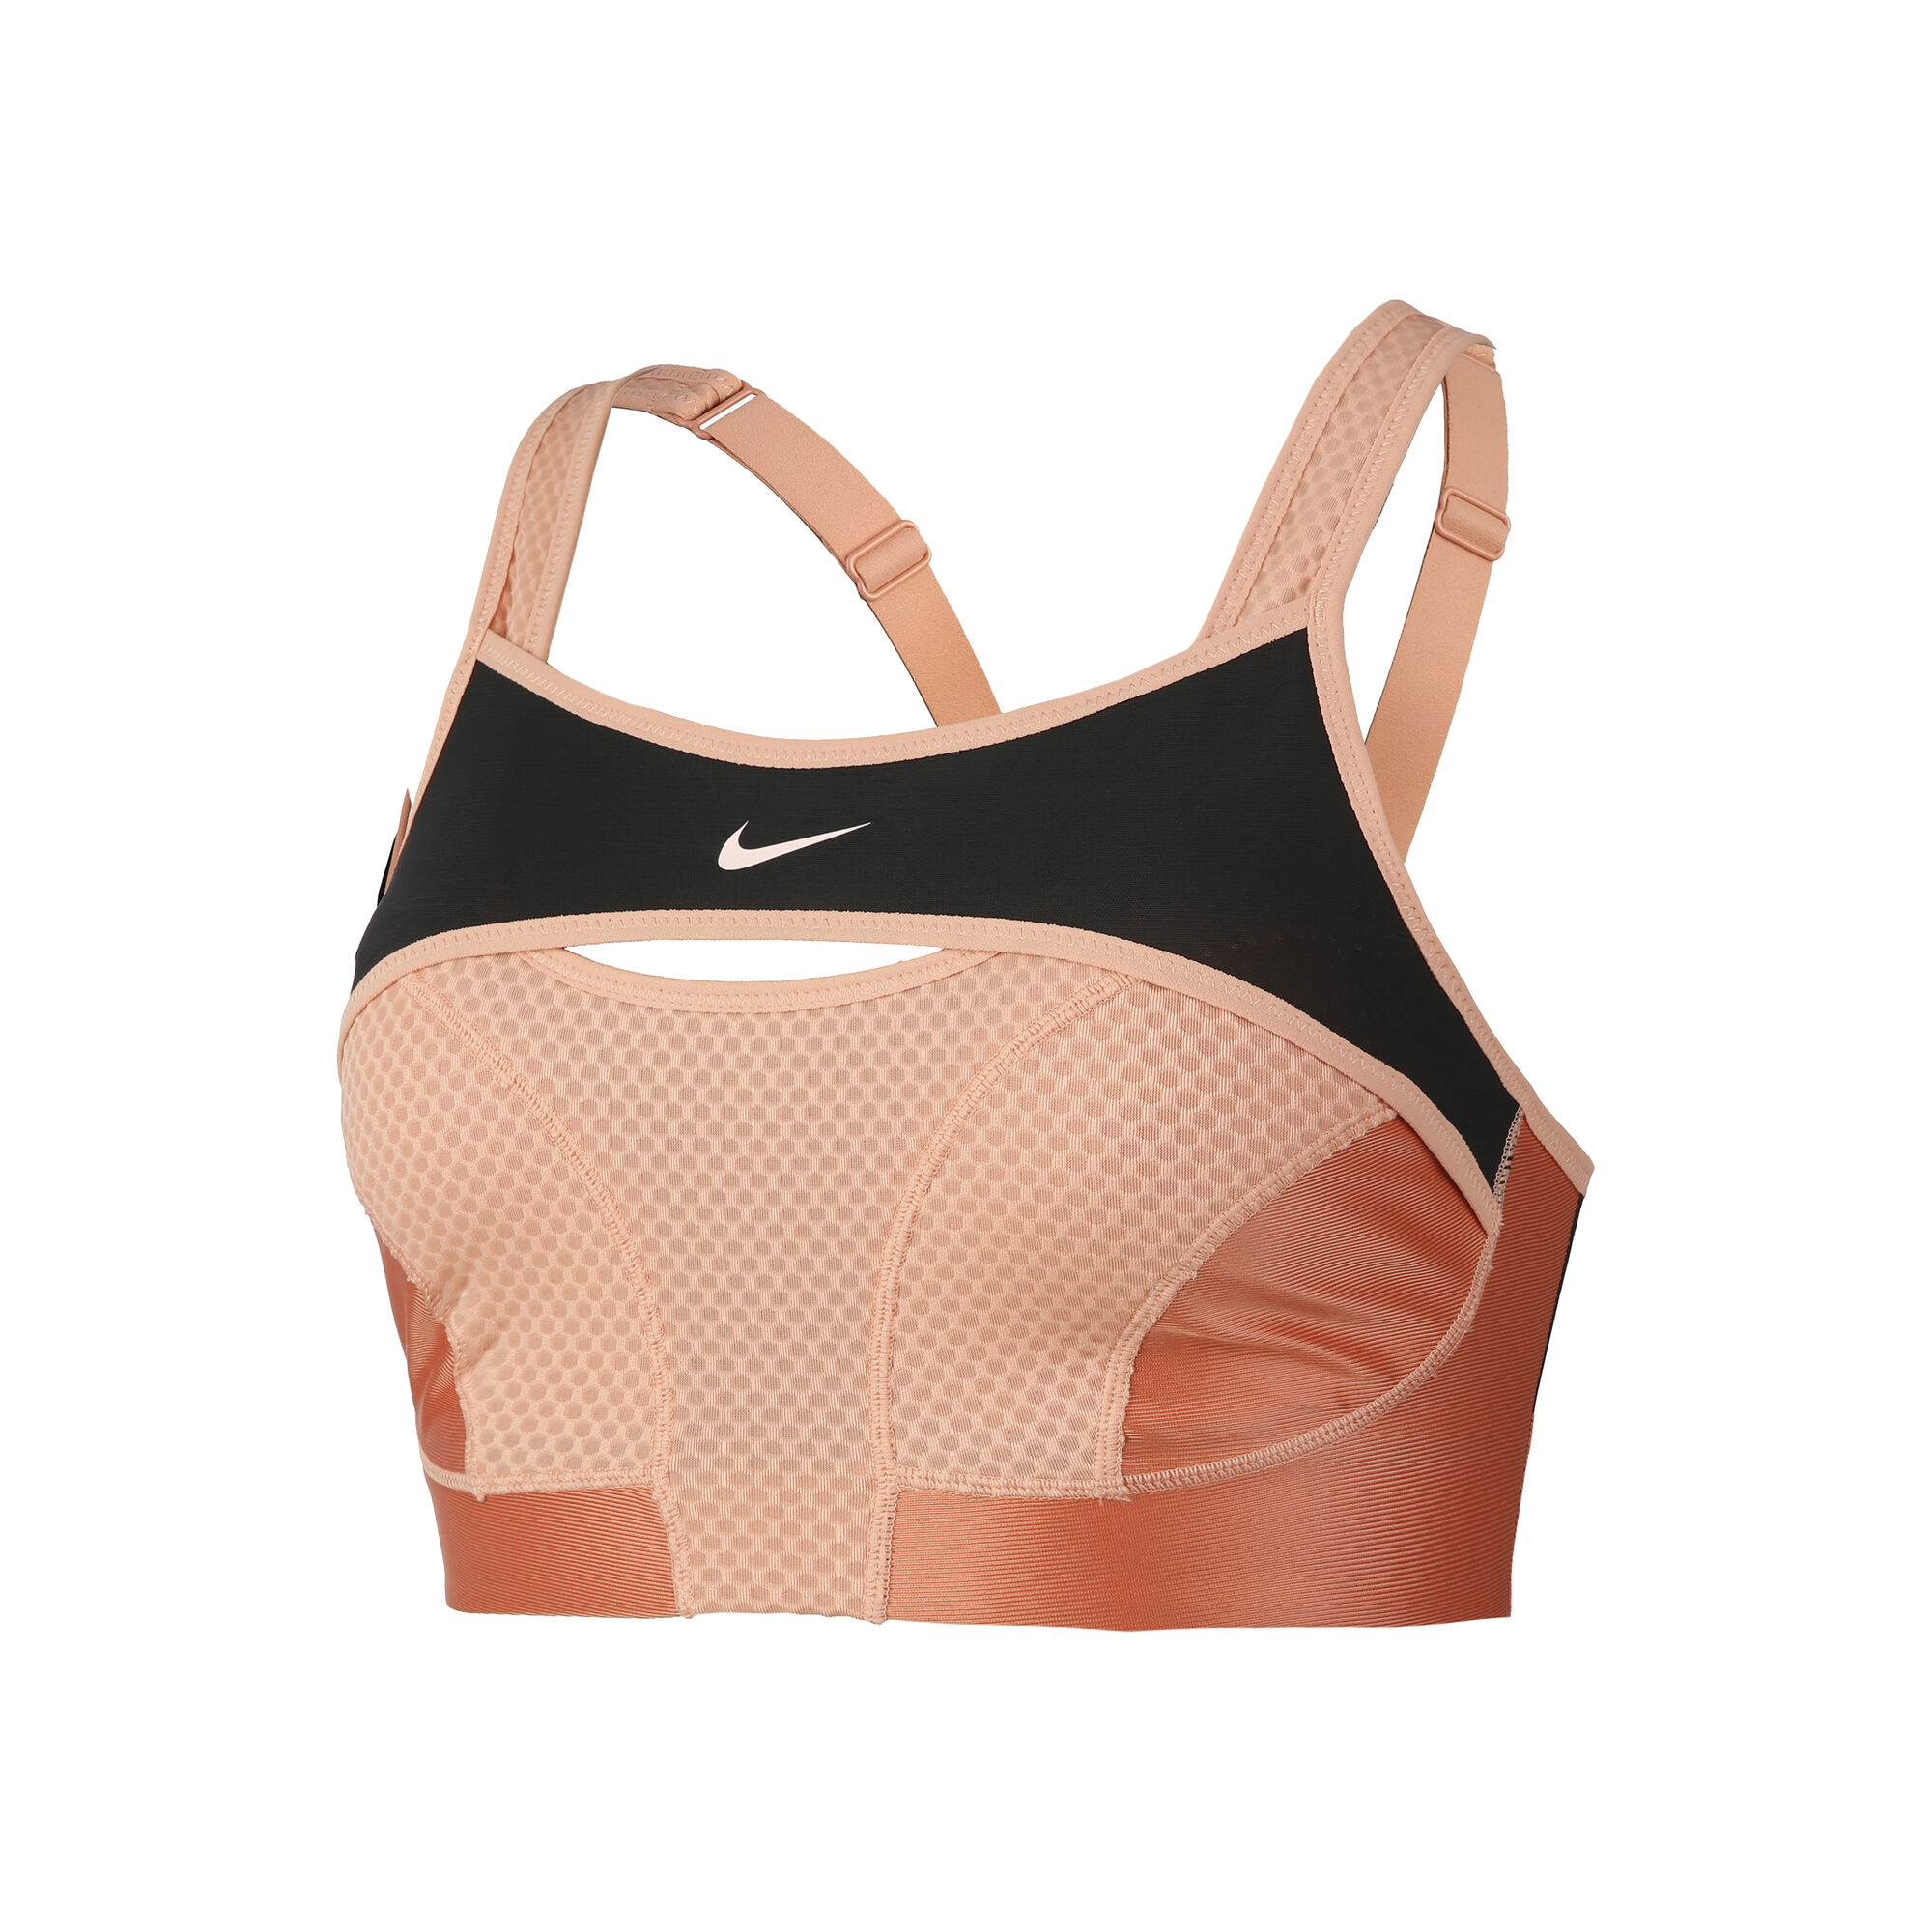 Nike Alpha UltraBreathe Women's Sports Bra - SU22  Sostenes deportivos,  Deportes femeninos, Sujetador deportivo